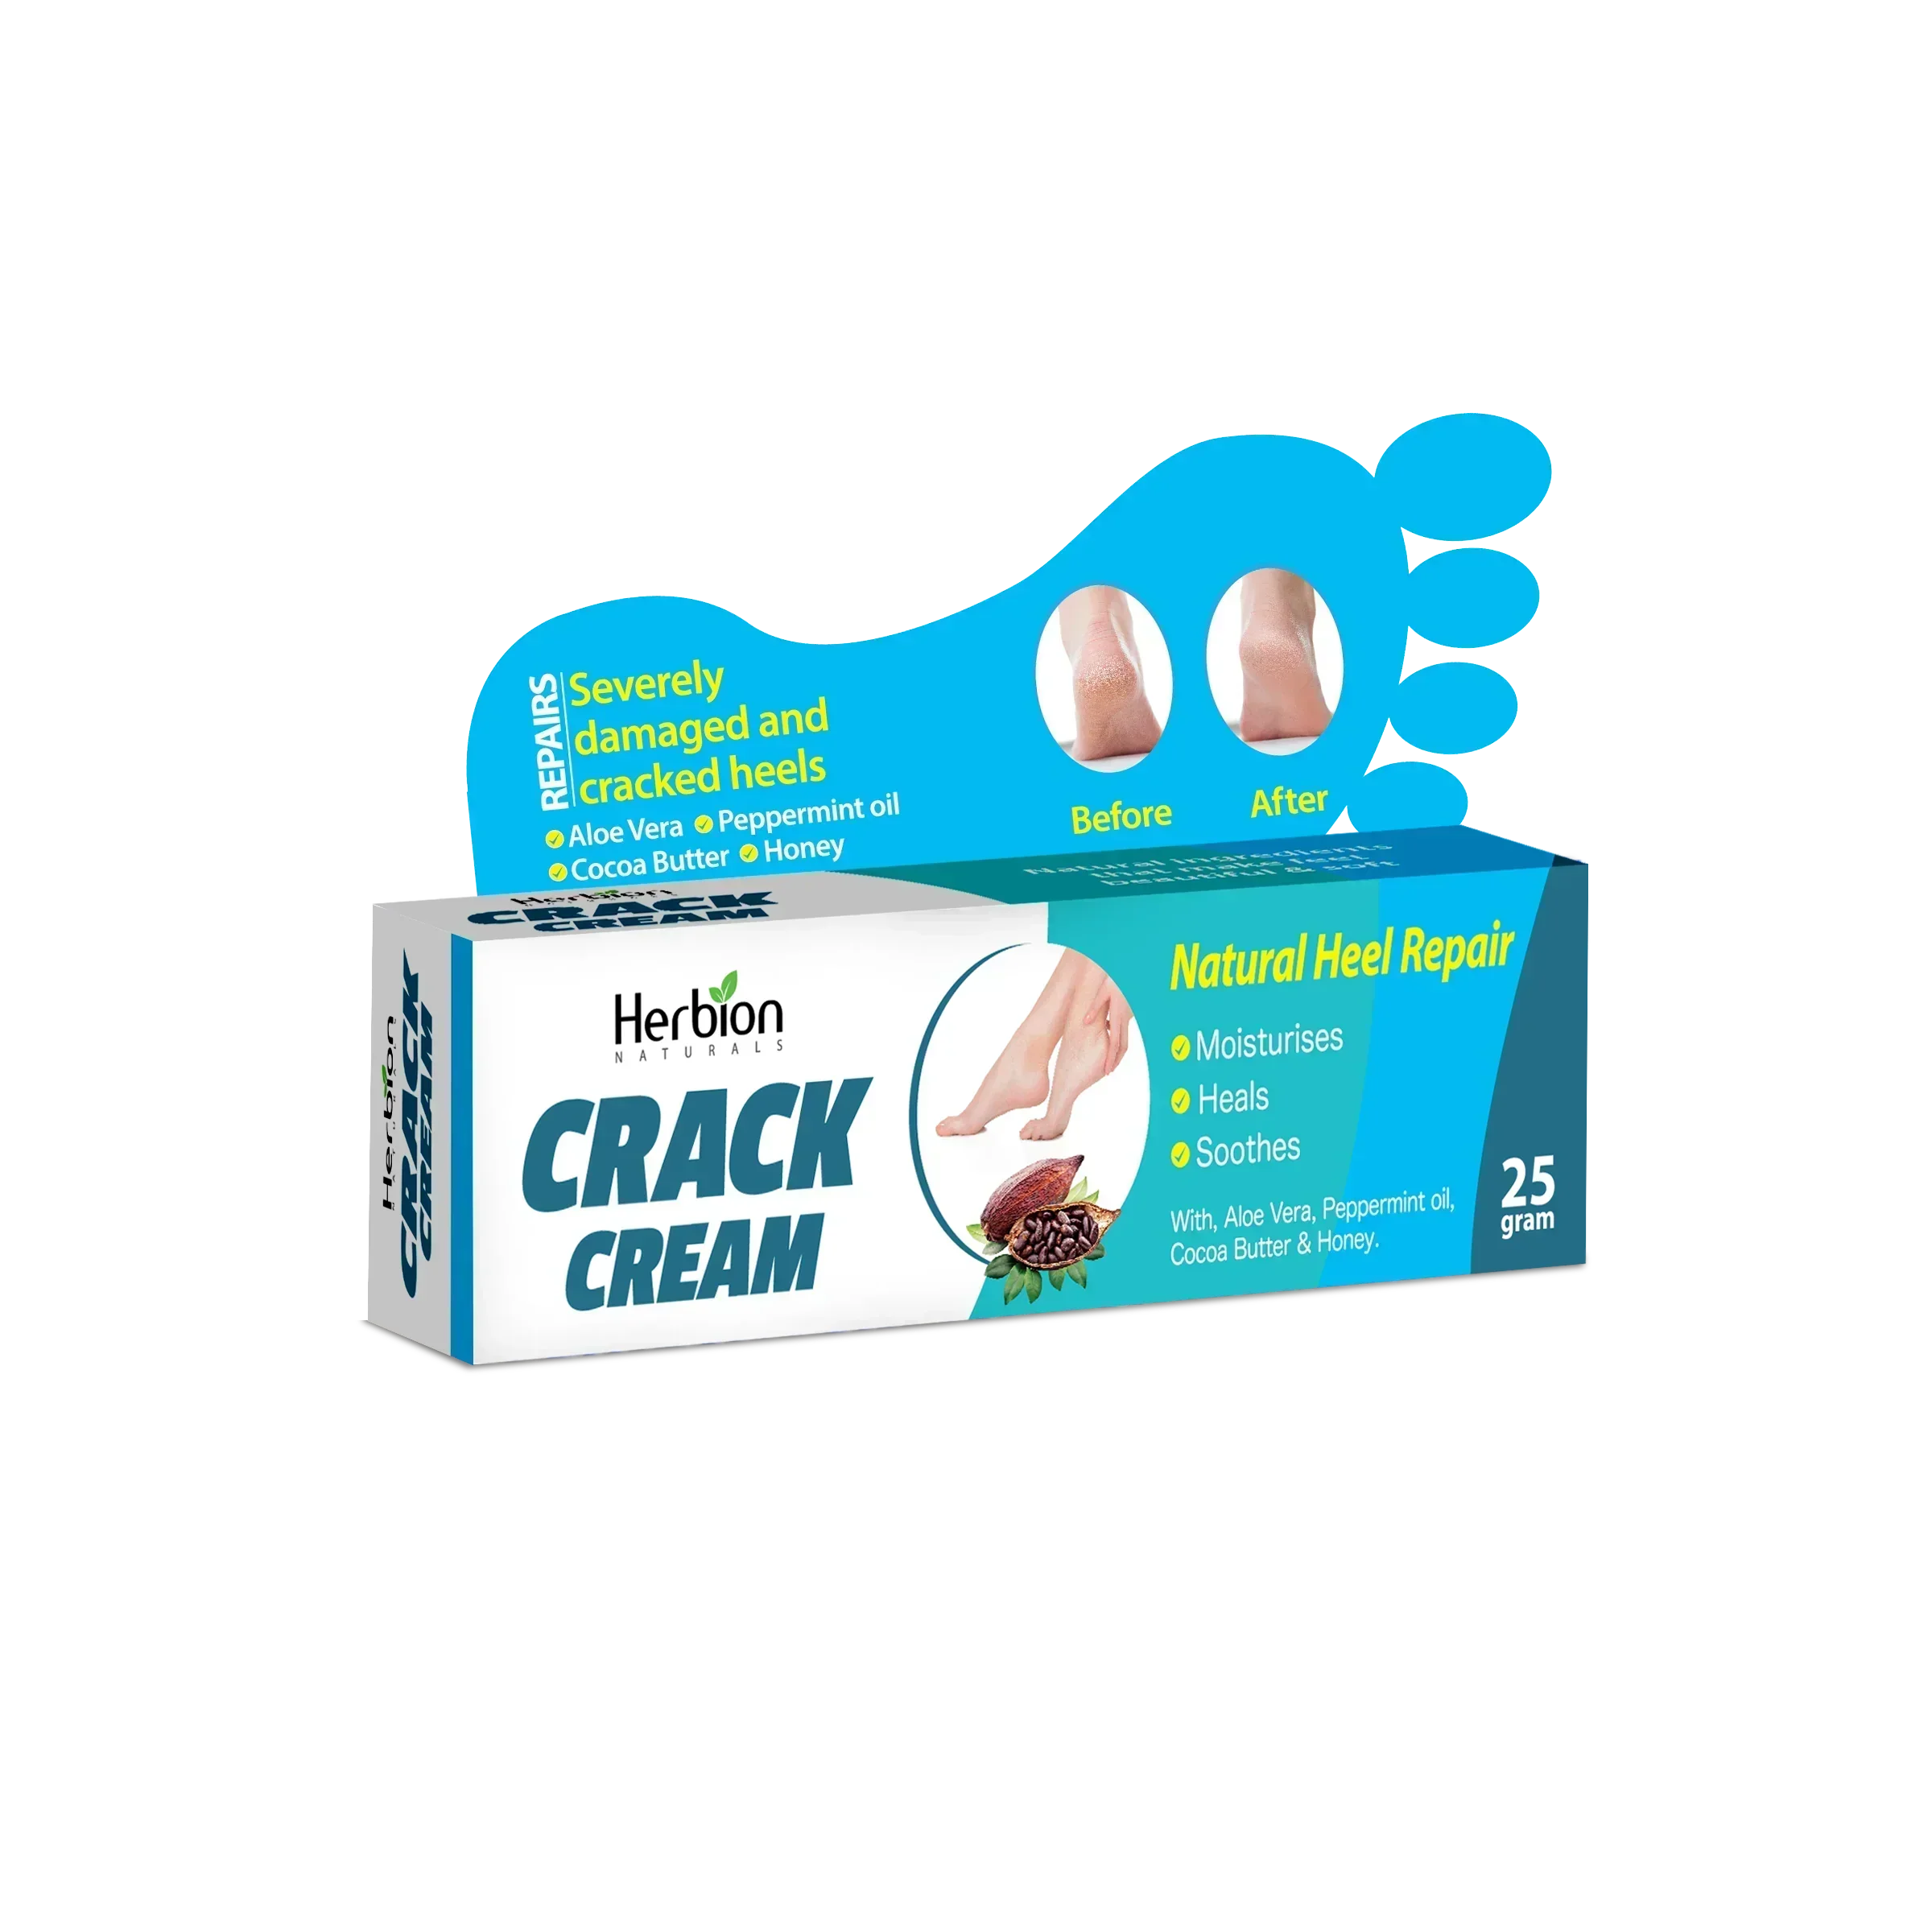 Herbion Crack Cream - Premium Gel / Cream from Herbion - Just Rs 200! Shop now at Cozmetica